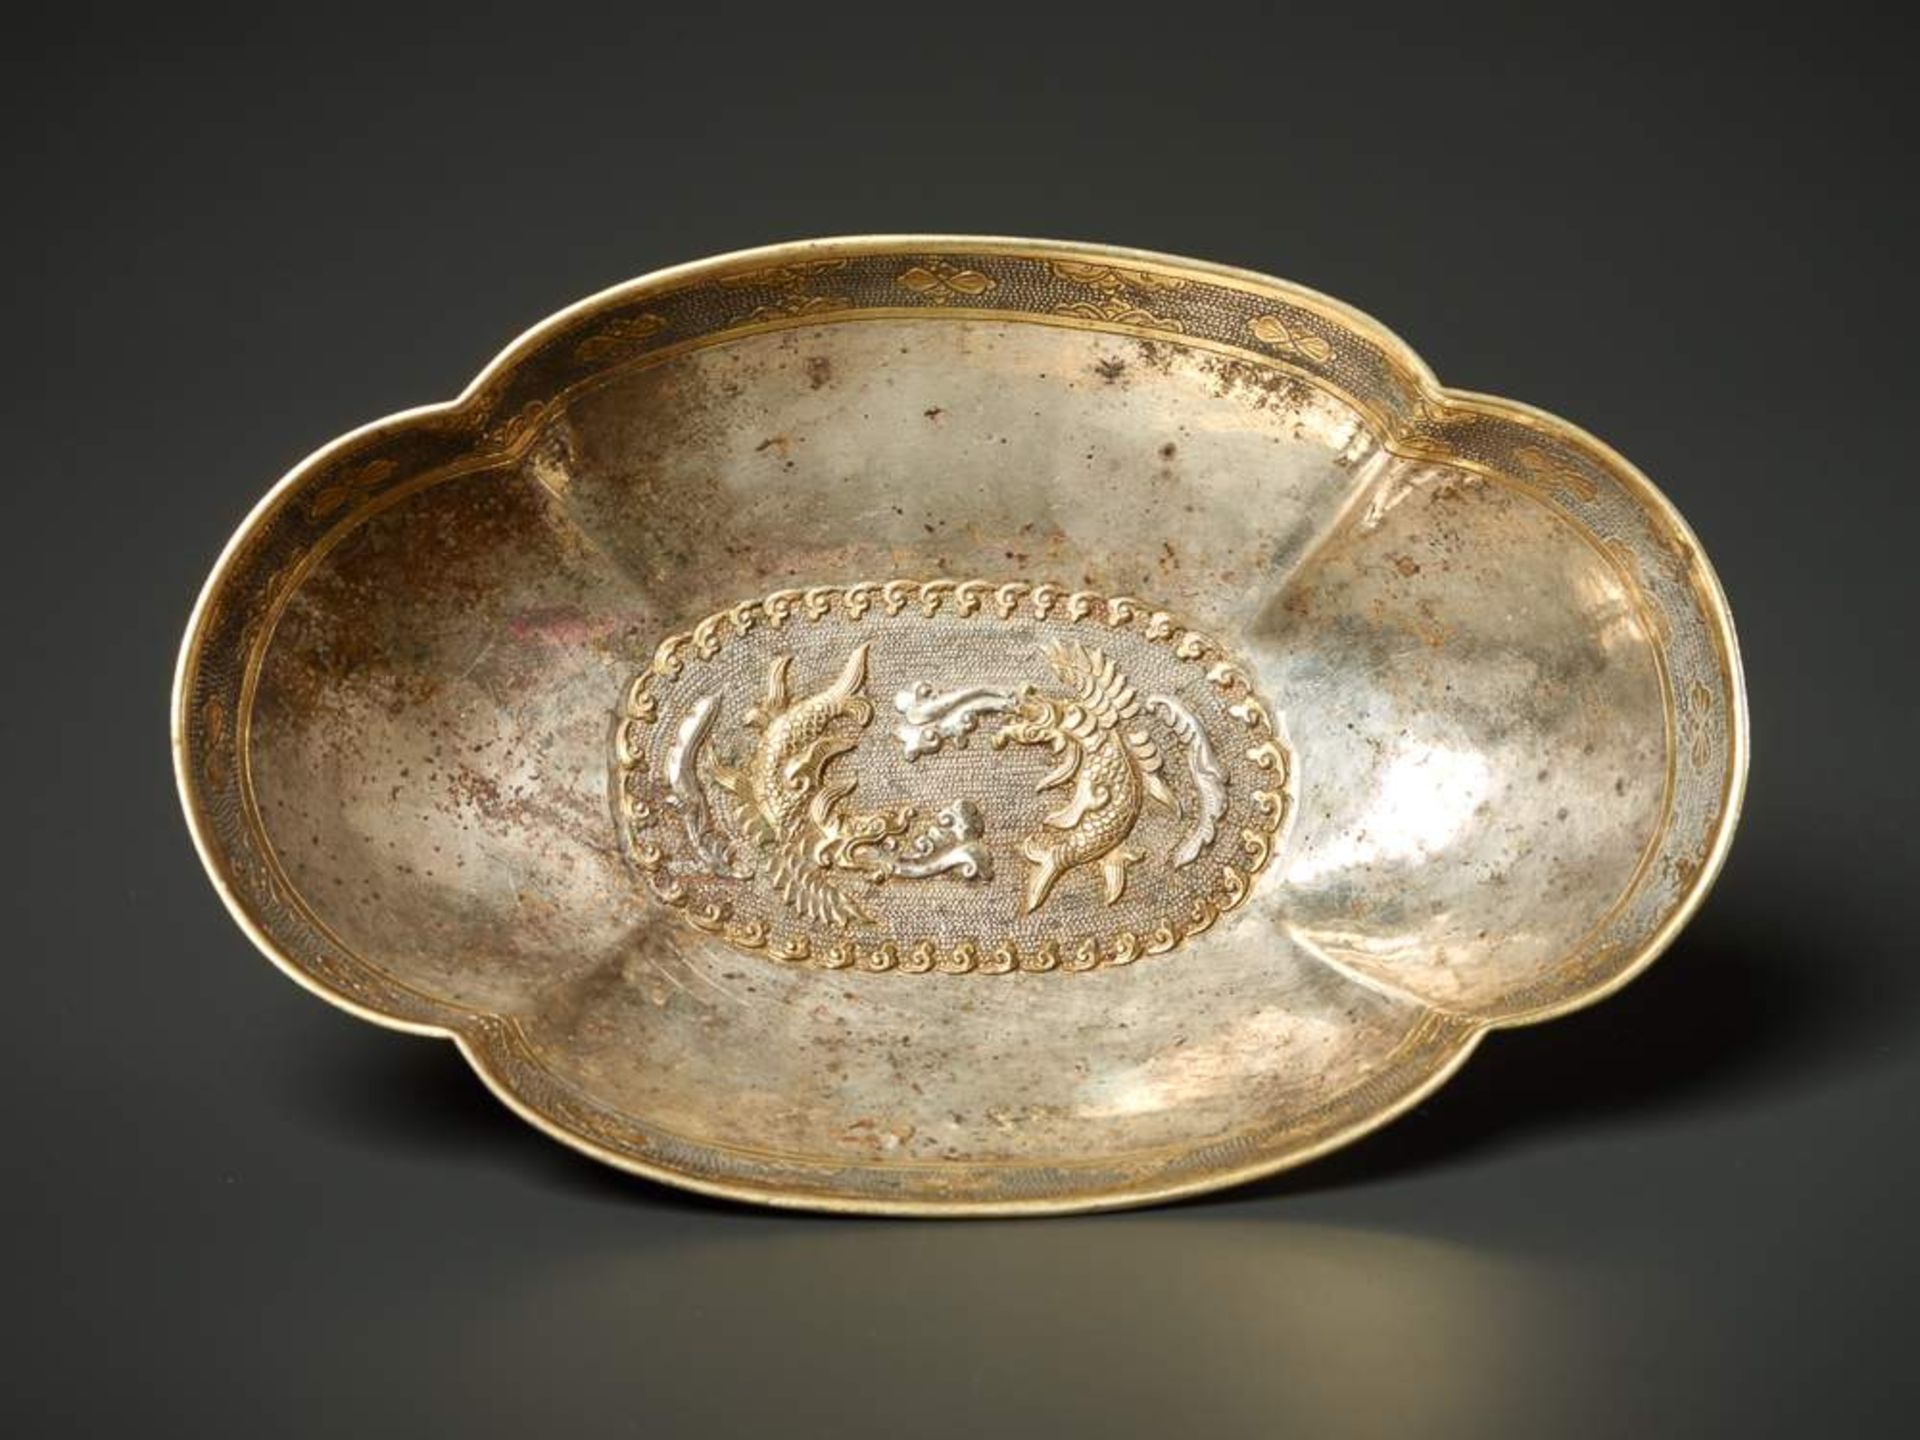 SCHALE MIT FISCHDRACHEN-DEKOR
Silber und Vergoldung. China, vermutlich Tang-Dynastie (618 - 907) - Image 2 of 4